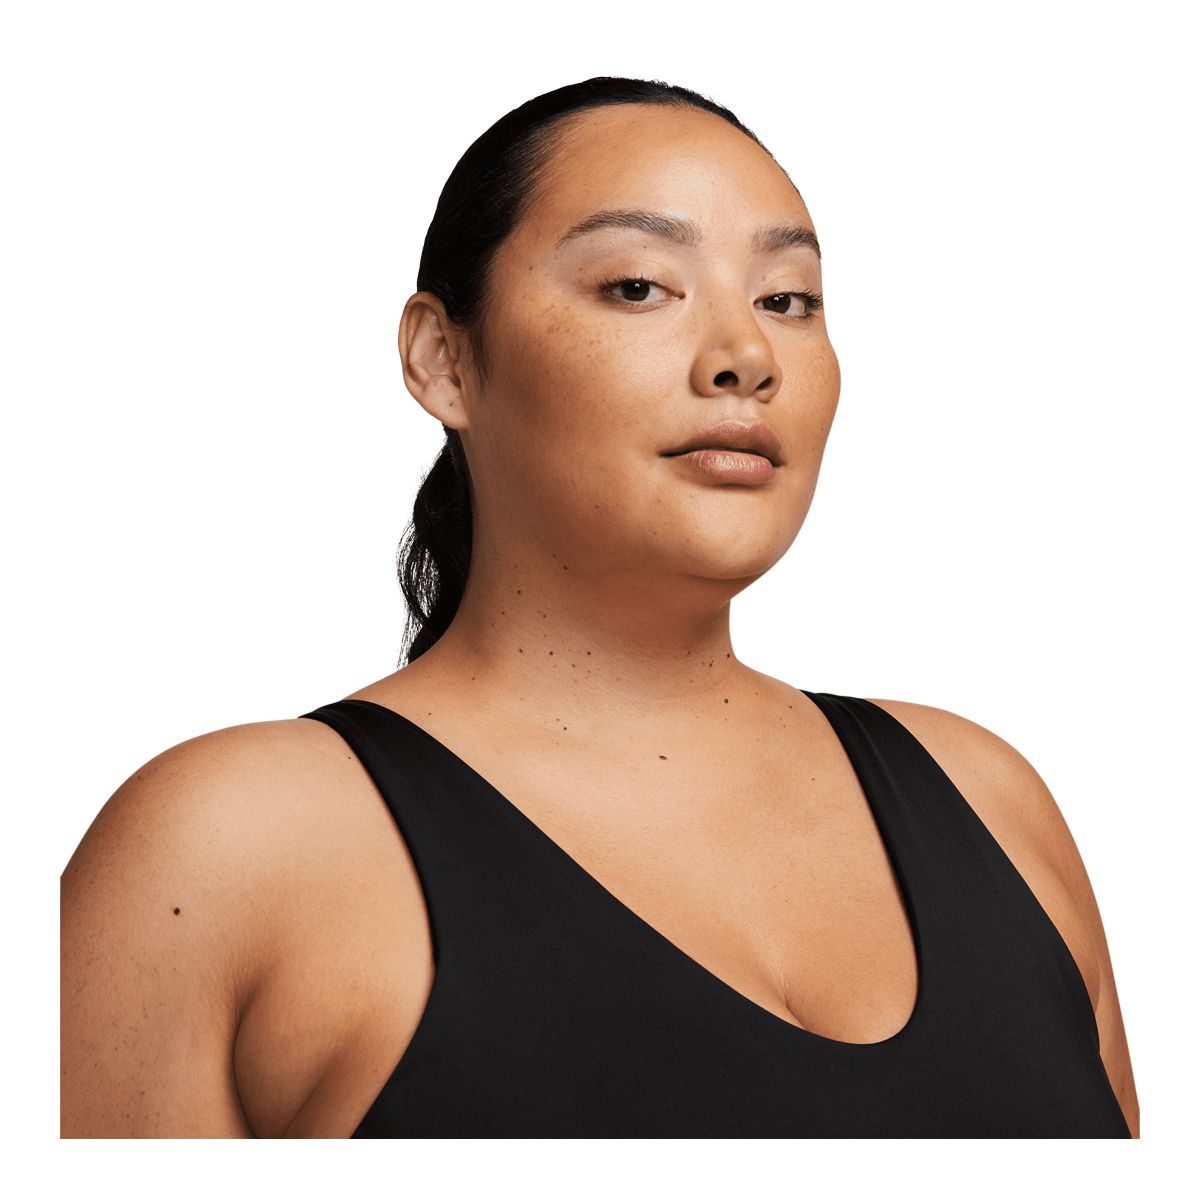 Nike [1X] Women's Plus Size Indy Bra-White/Black DN4222-100